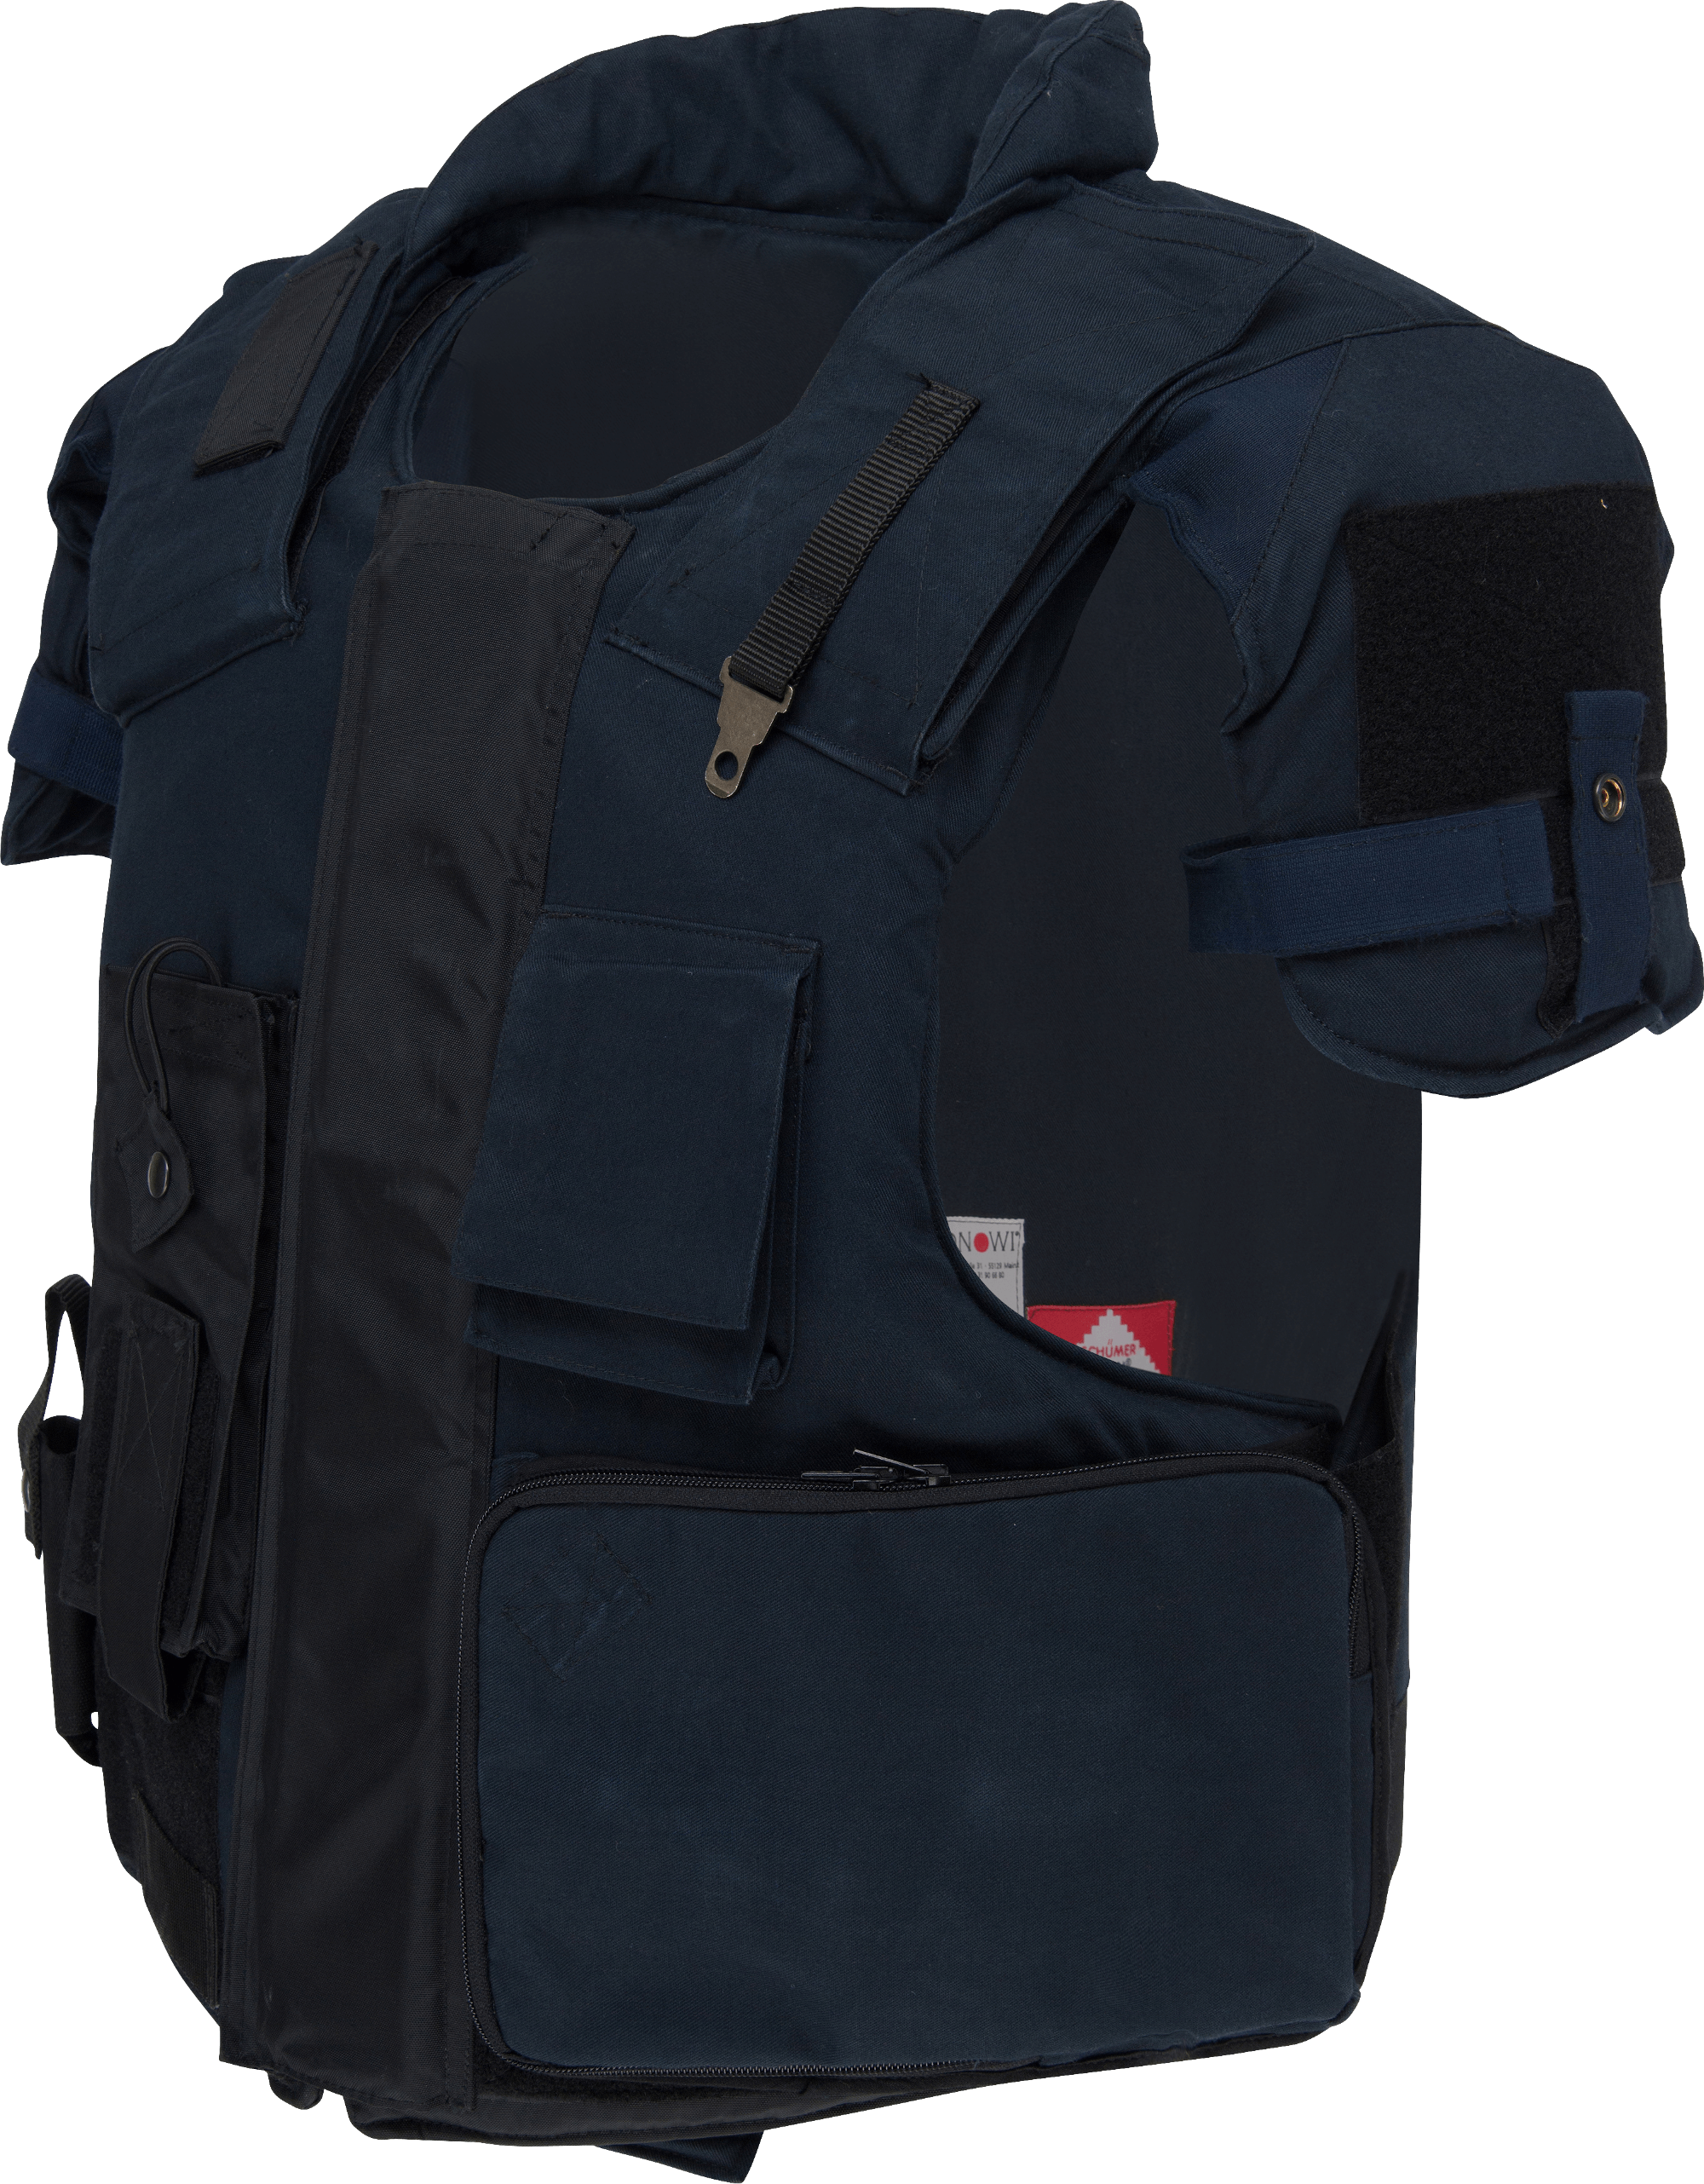 Schlag- und Stichschutz-Weste, original Polizeimodell, gebraucht, Bestzustand, mit Transport-Tasche